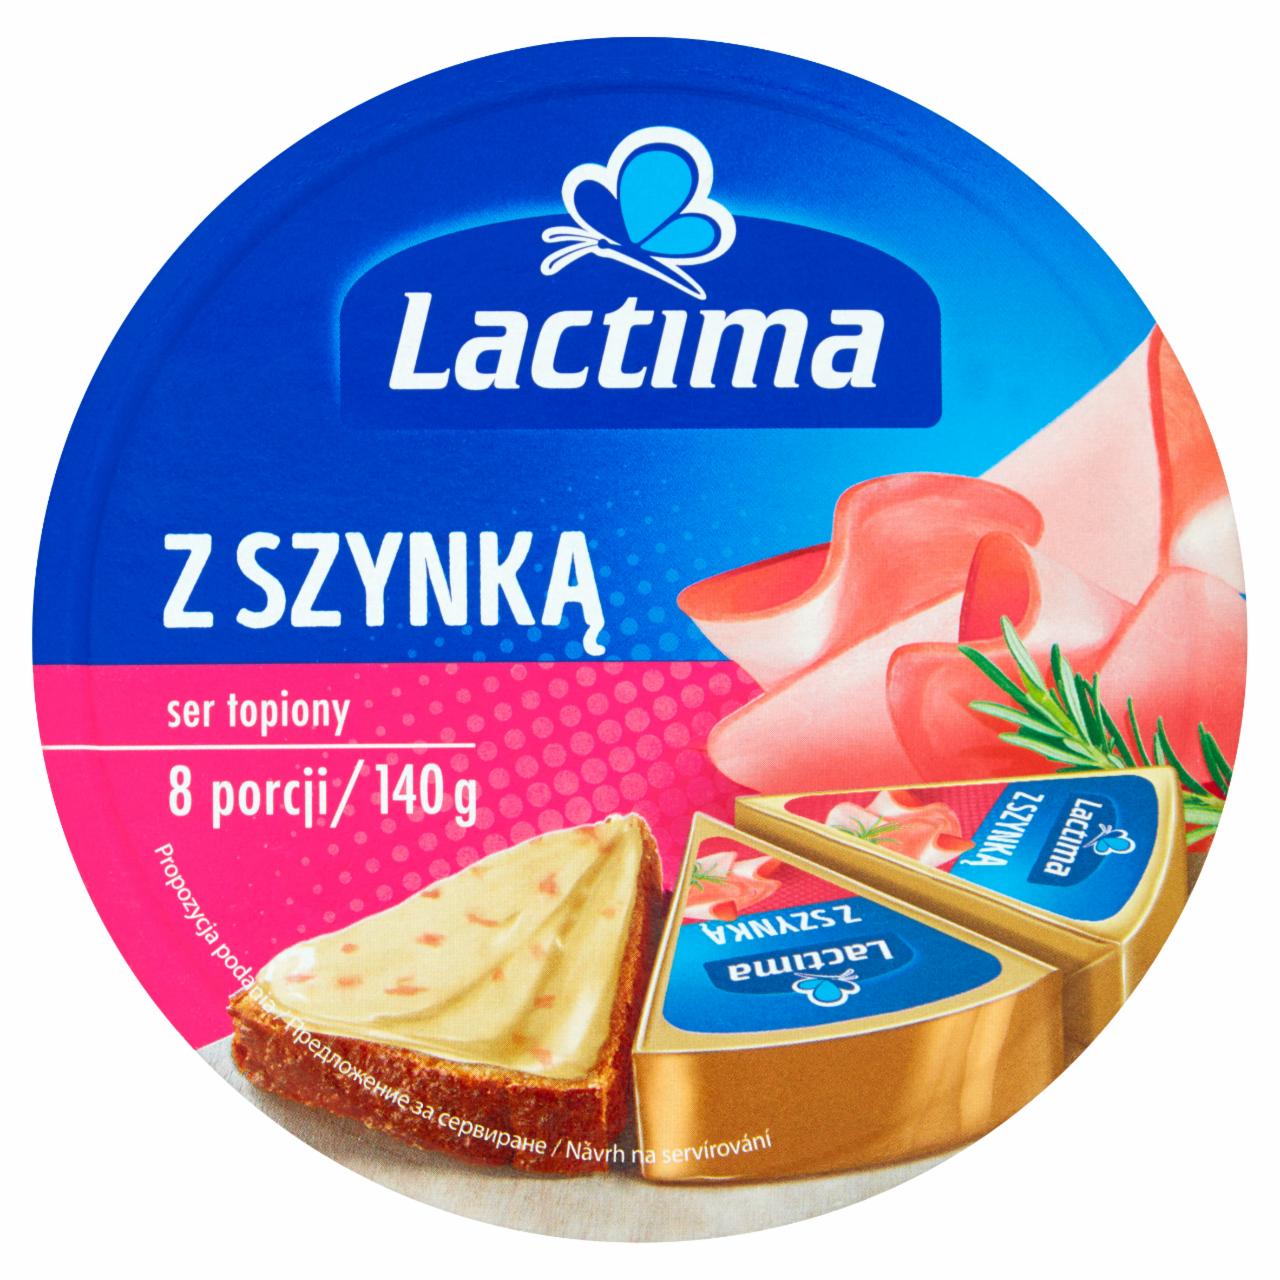 Zdjęcia - Lactima Ser topiony z szynką 140 g (8 x 17,5 g)